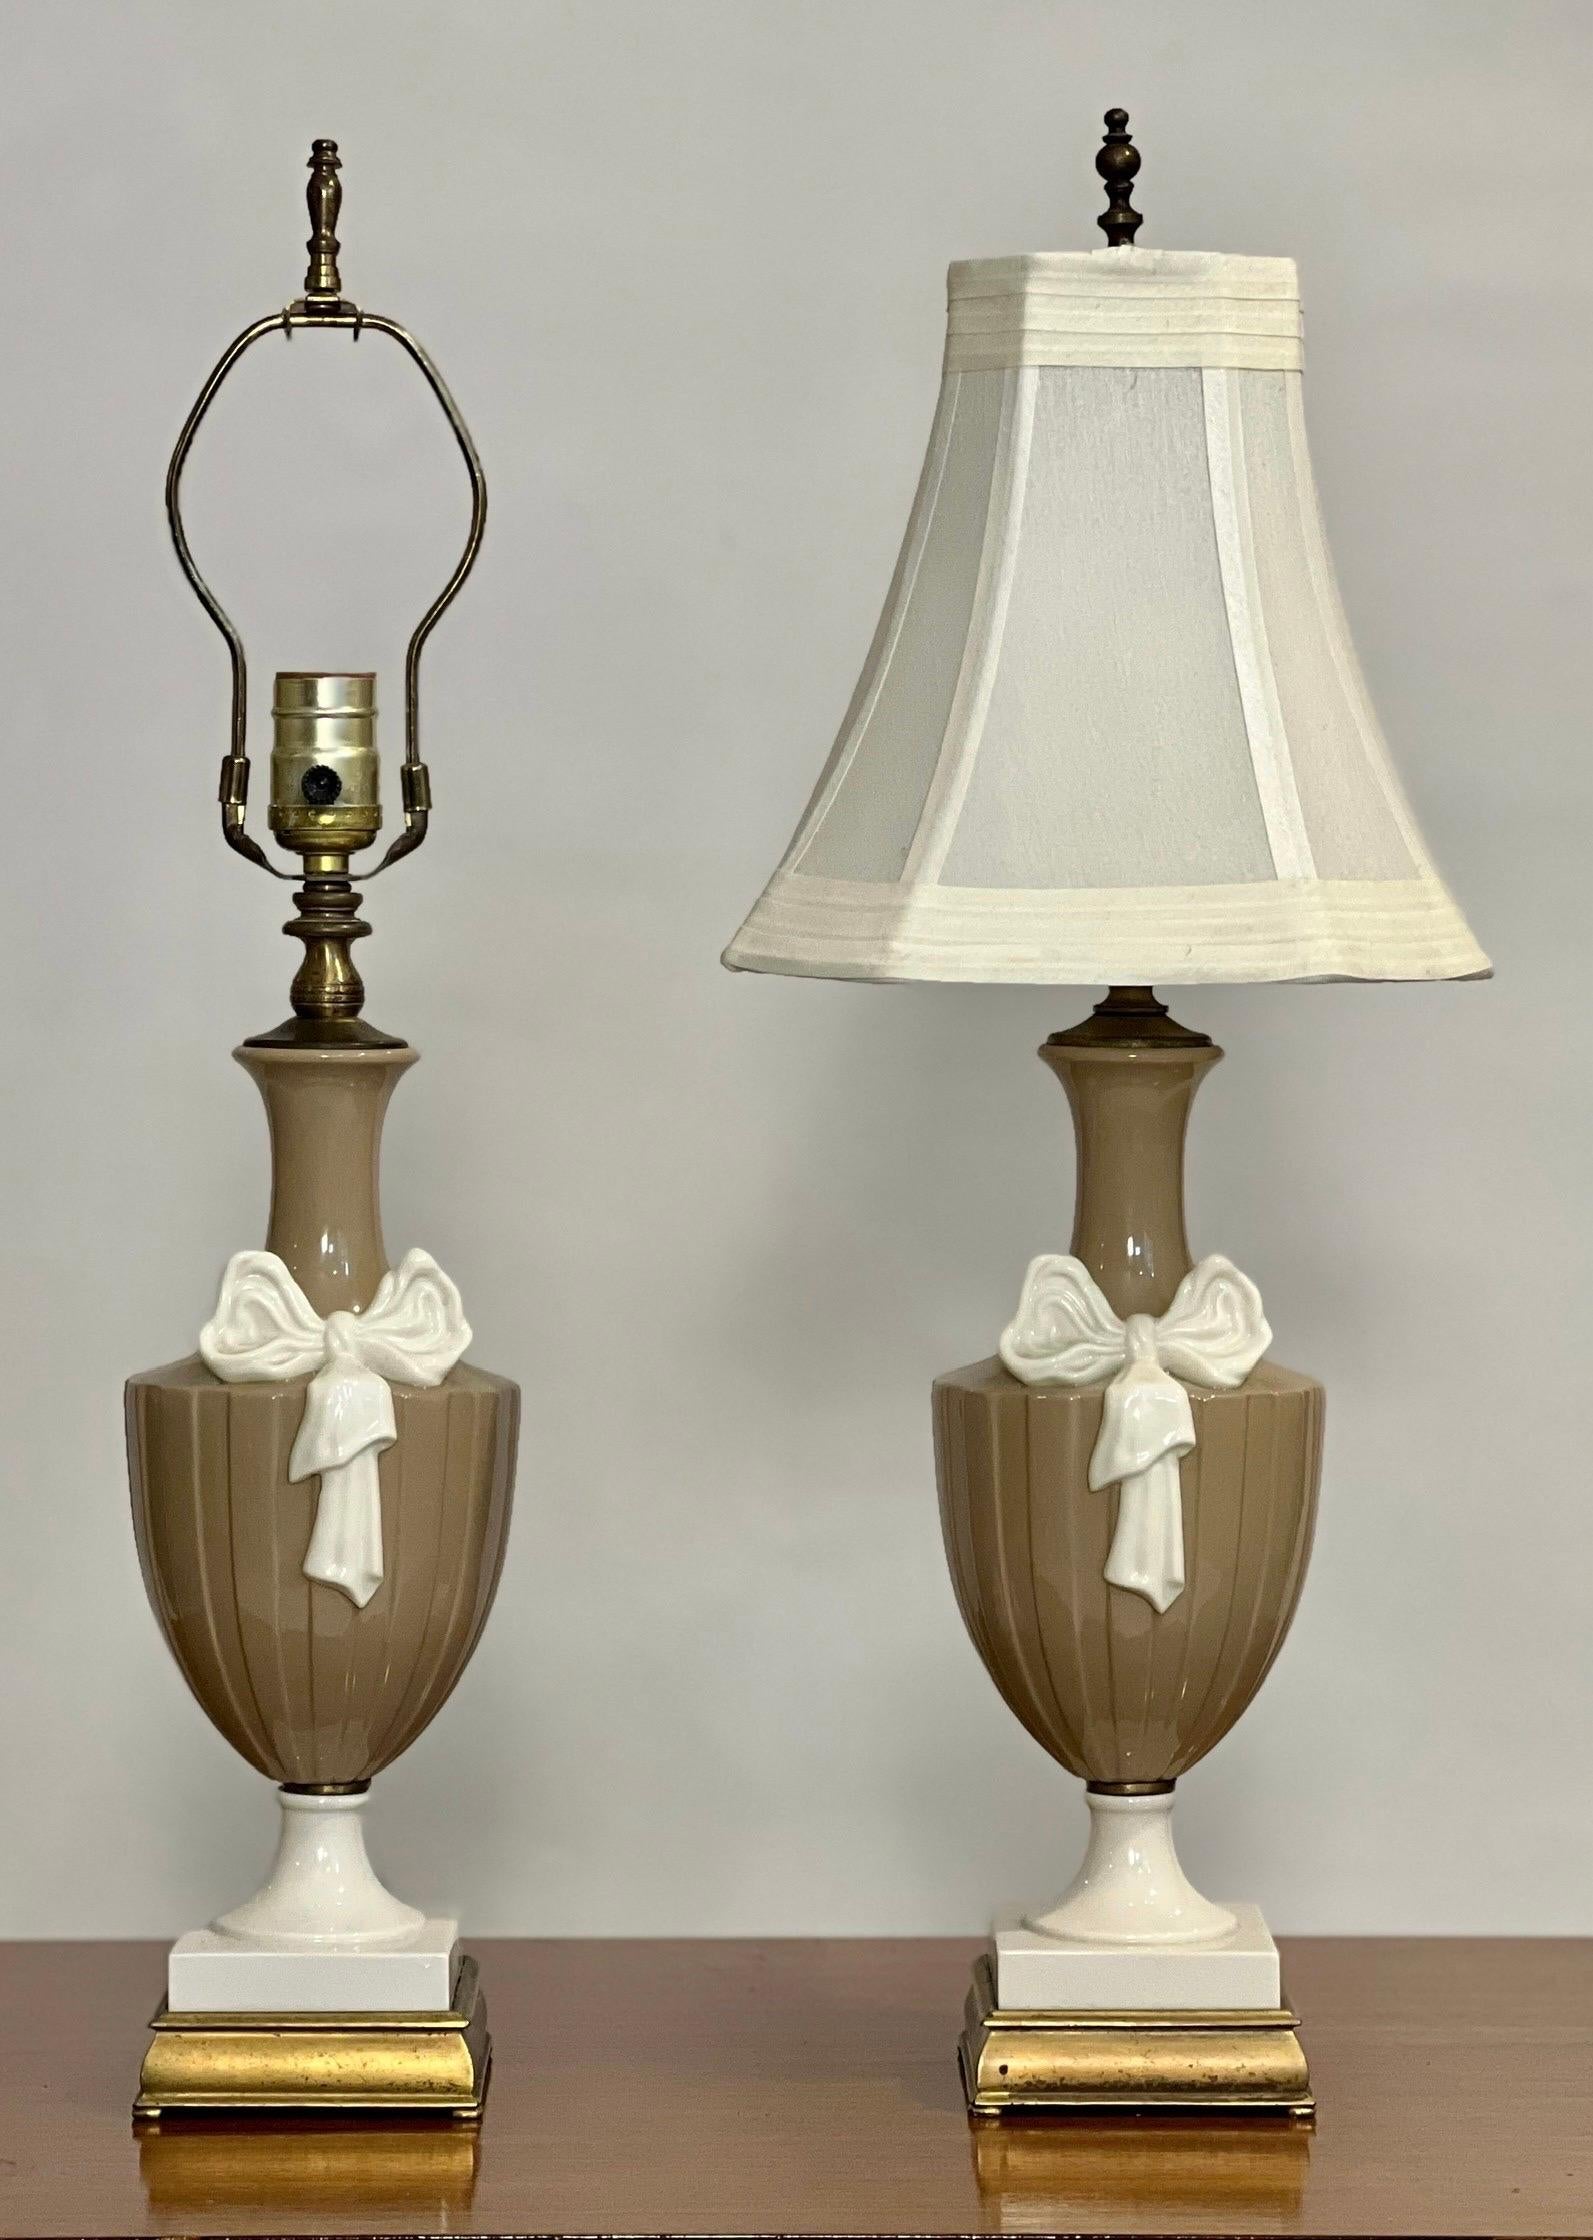 Zwei Lenox zugeschriebene Porzellanlampen in Form einer Urne im neoklassischen Stil von Dav Art, NY.

Charmante, zierliche Lampen in einem beruhigenden modernistischen Farbschema aus Taupe und Cremeweiß auf quadratischen Messingsockeln mit einer